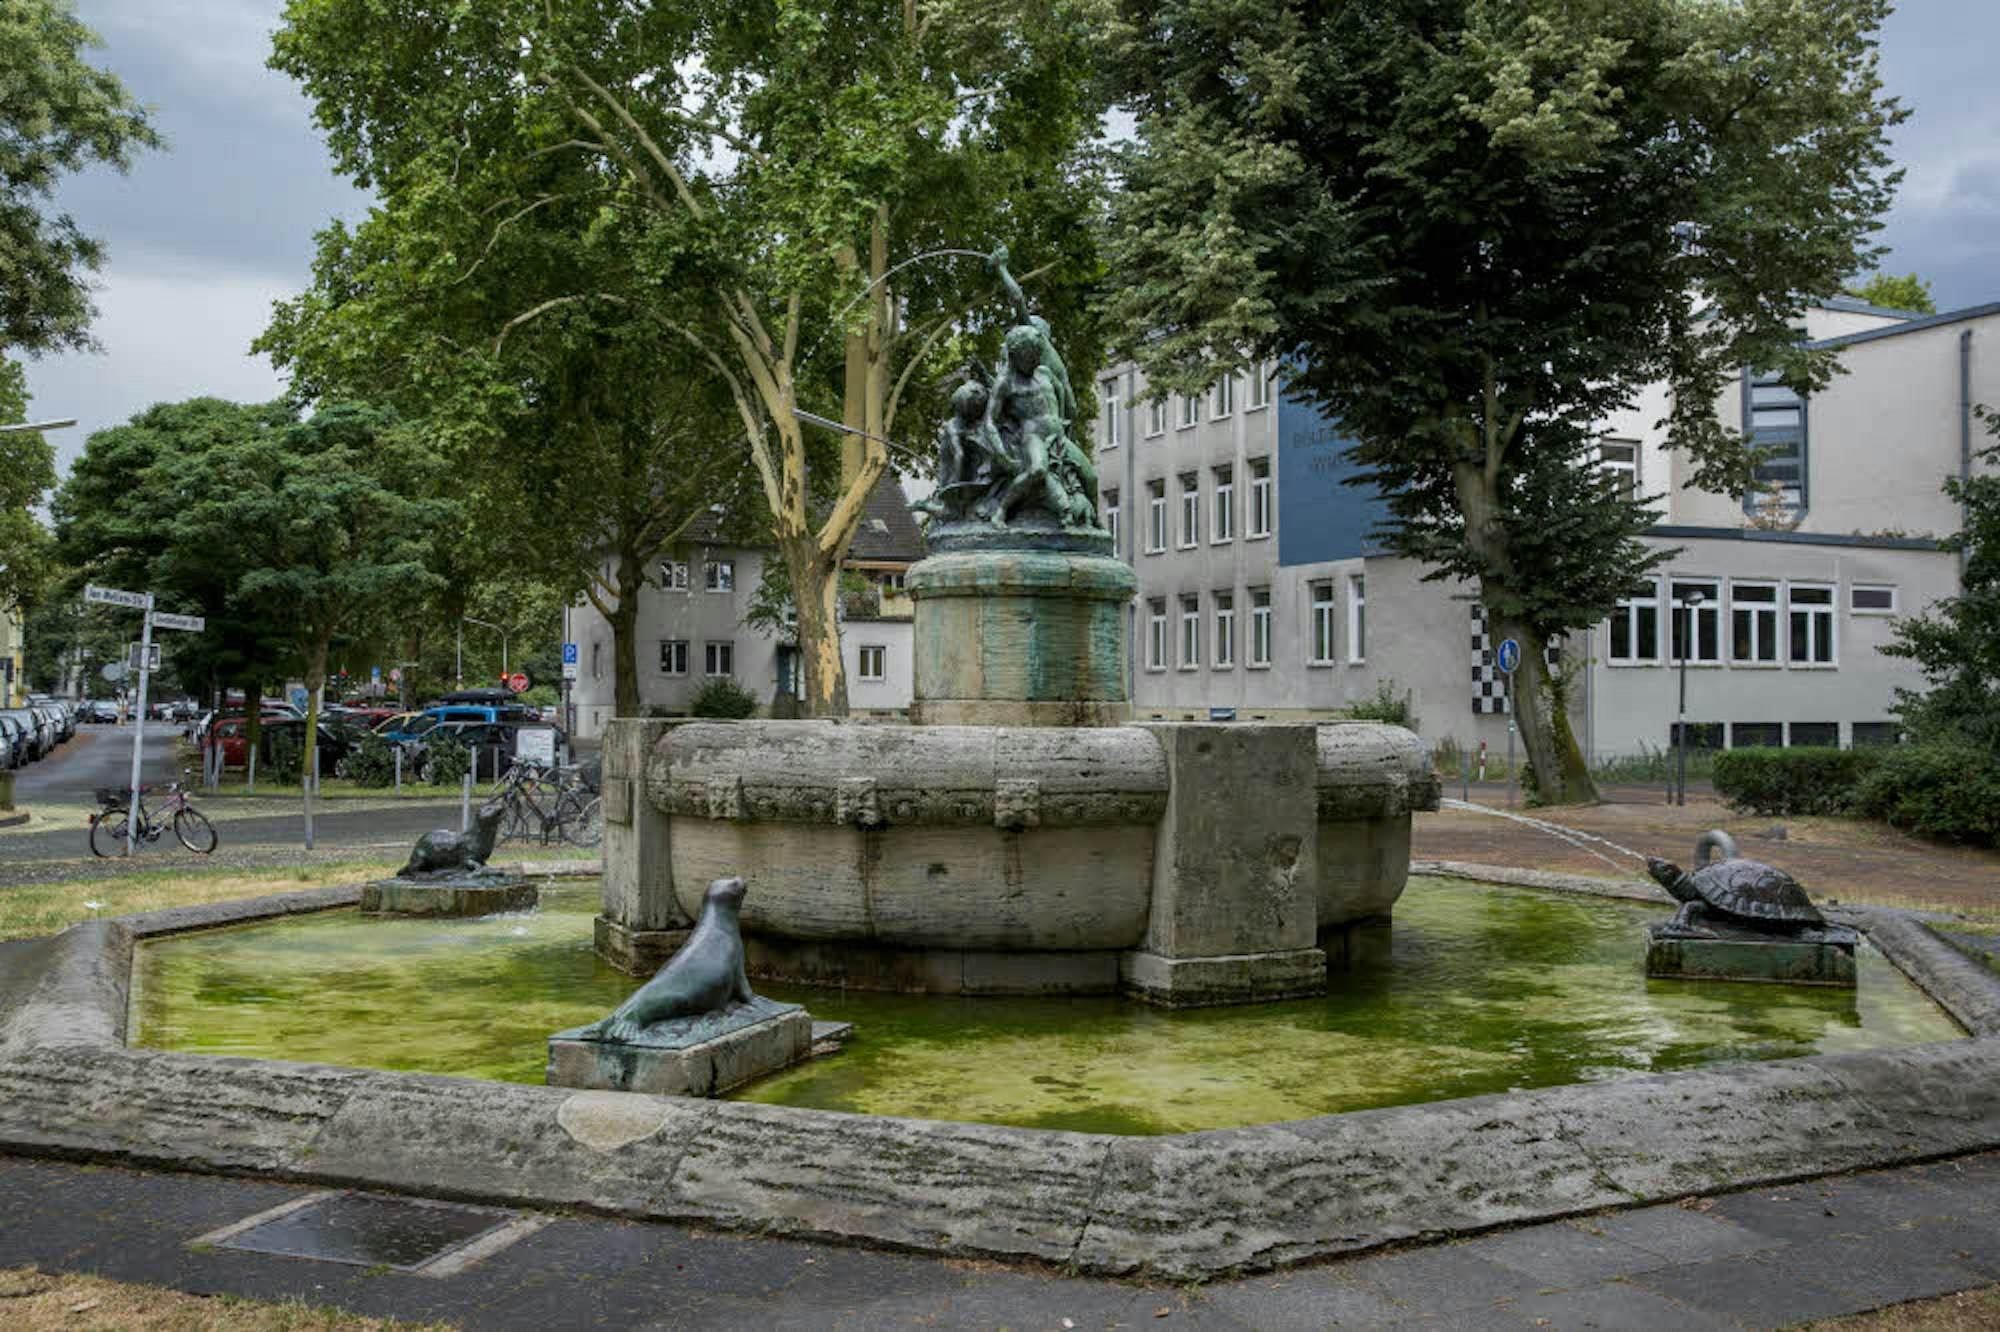 Der Märchenbrunnen ist von Tieren wie Seehund und Schildkröte umgeben.